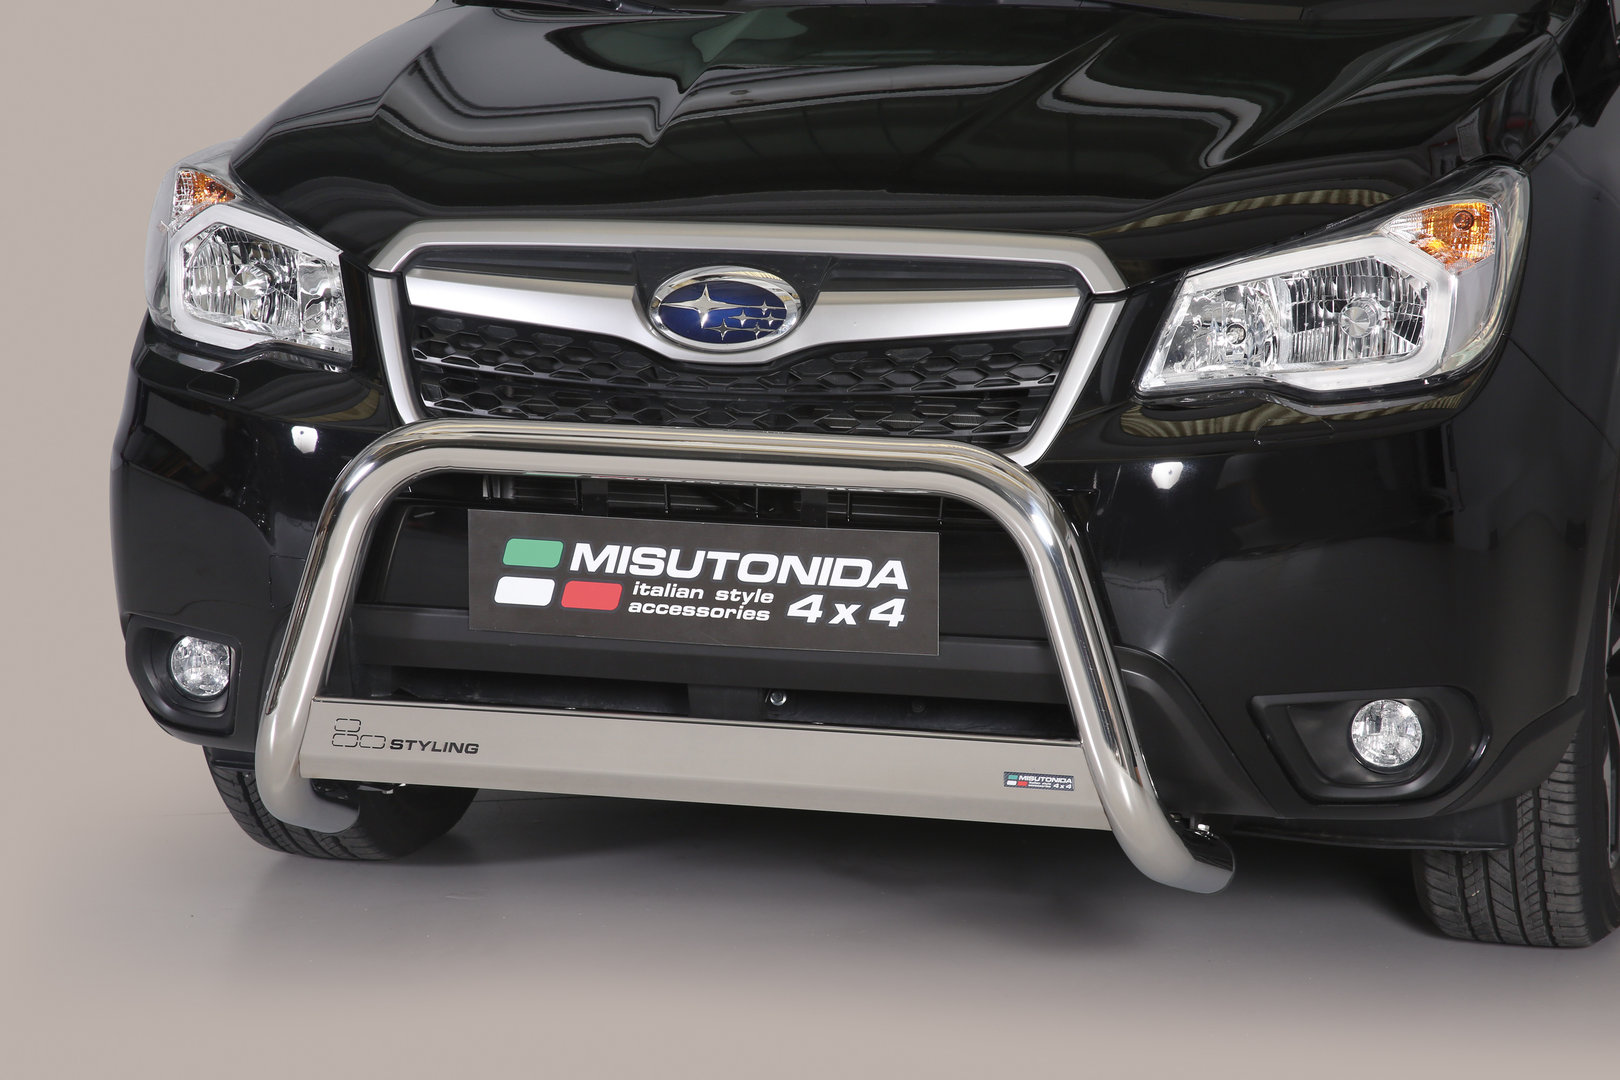 Subaru Forester EU-Valorauta 2013-2019 (Misutonida)